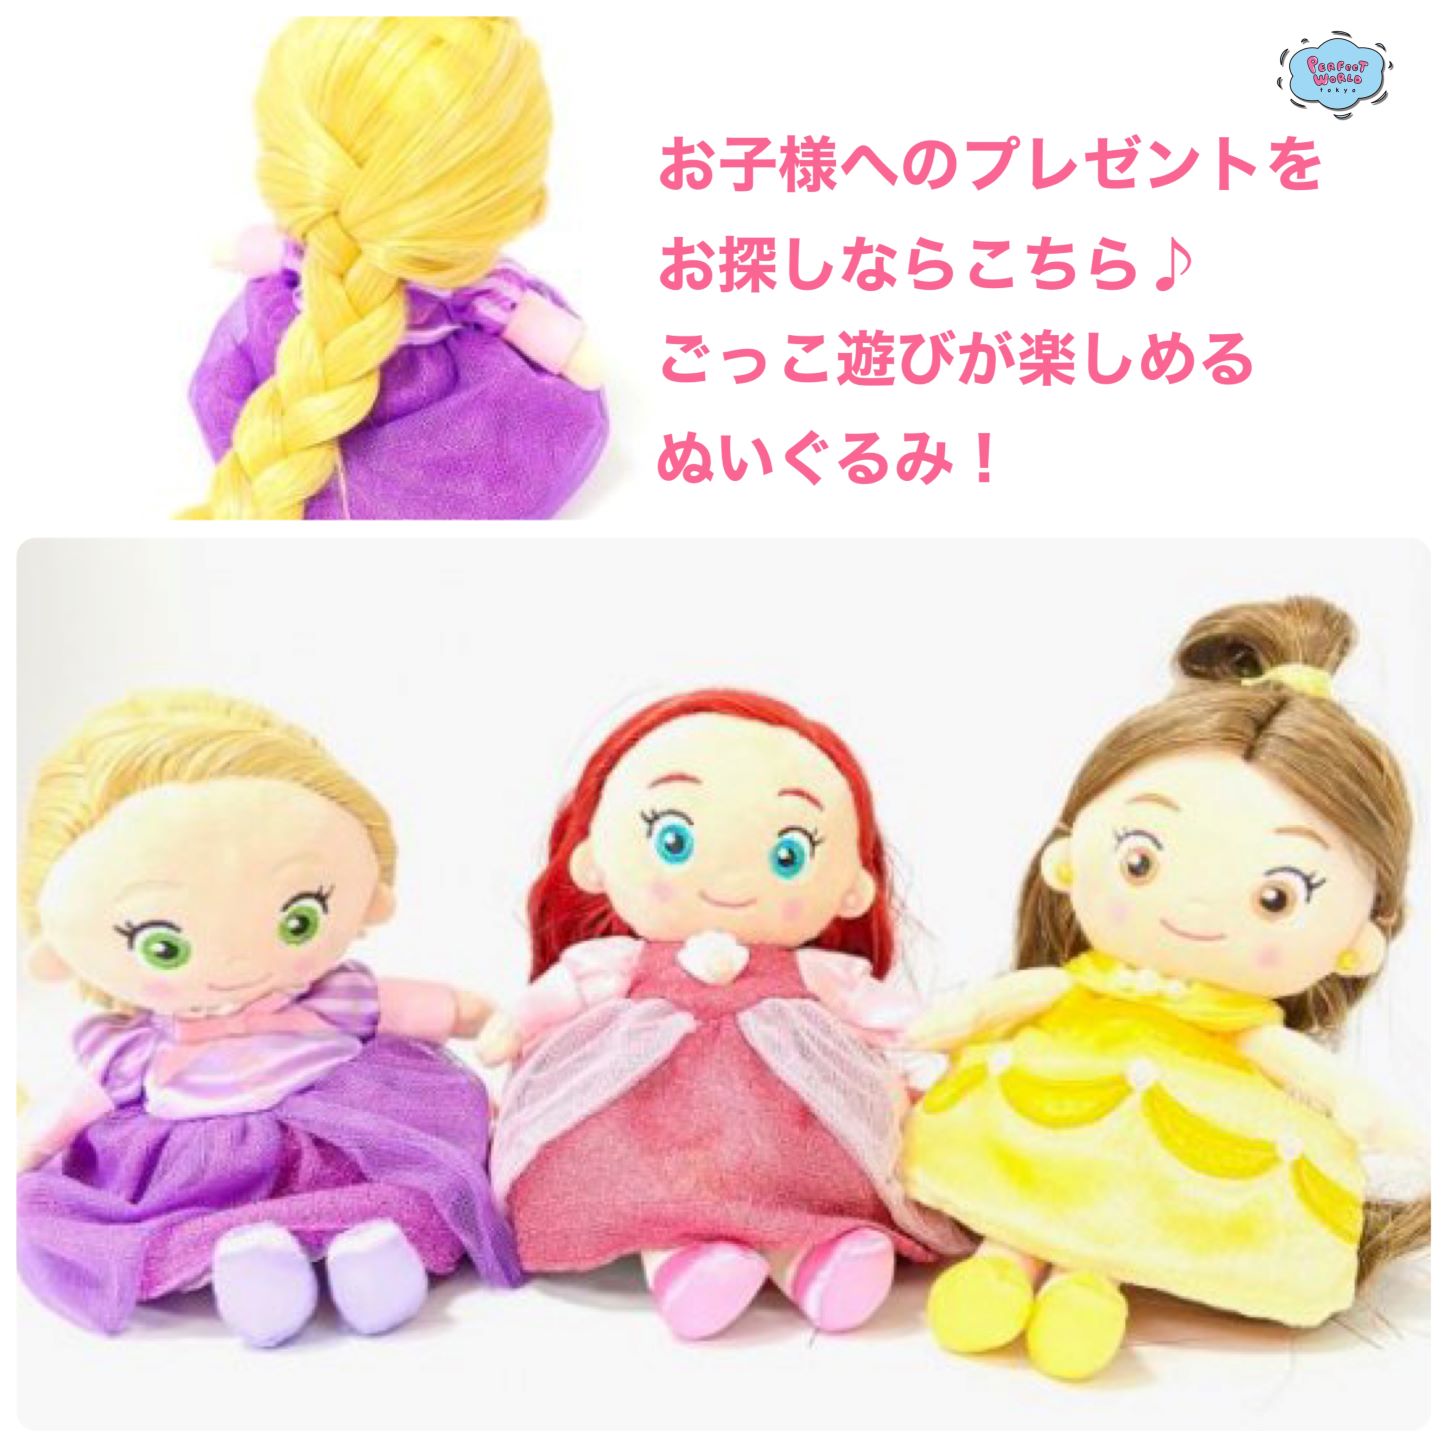 ディズニー プリンセス お子様へのプレゼントをお探しならこちら 女の子が好きな ごっこ遊び の名作 ディズニープリンセスのヘアメイクプラッシュドール Perfect World Tokyo